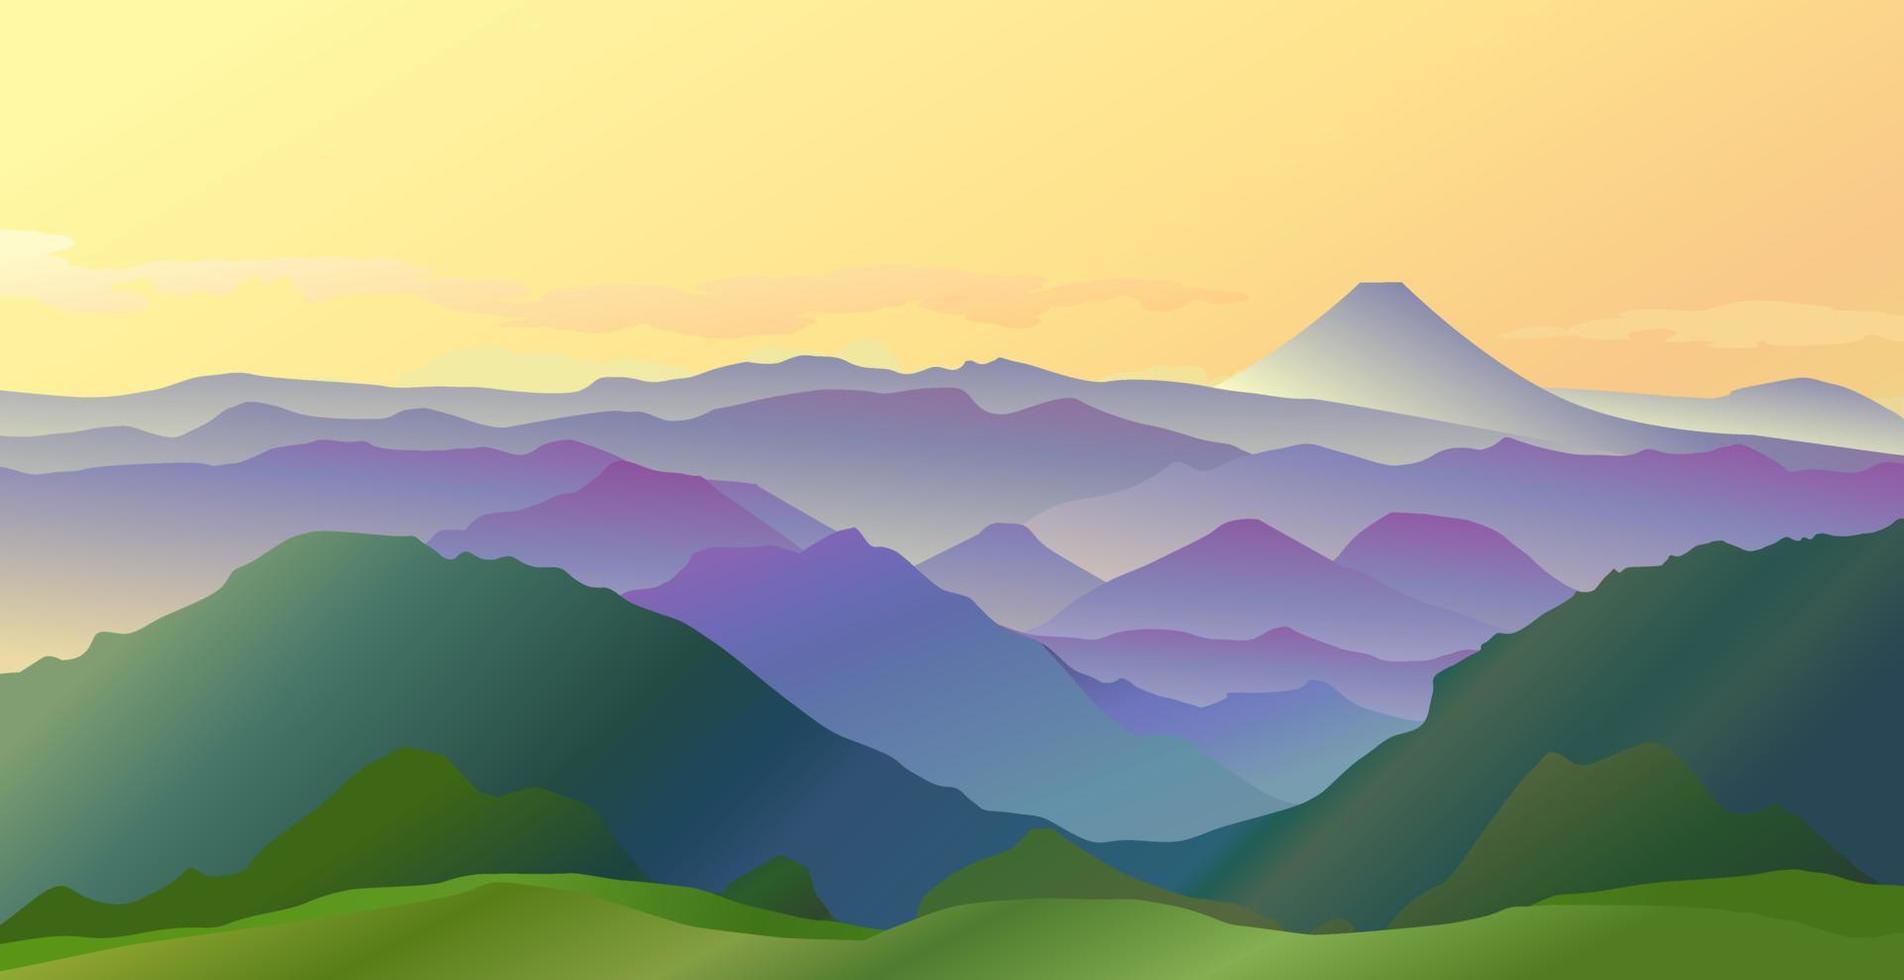 kleurrijke frisse groene heuvels in mist en zonlicht met Fuji-berg en gele lucht in de ochtend vector